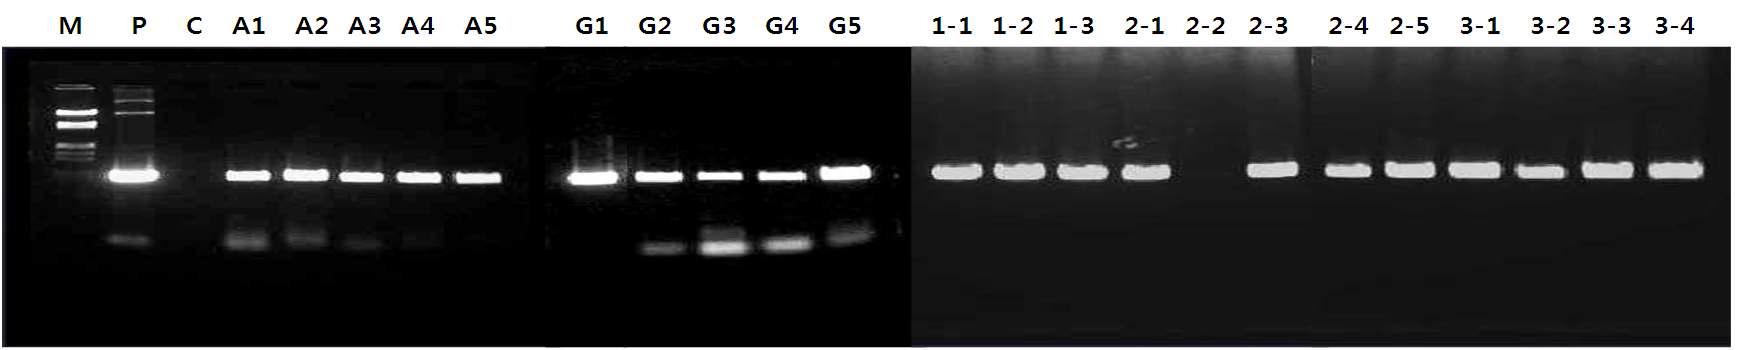 PCR 분석을 통하여 HPT 유전자 삽입의 확인